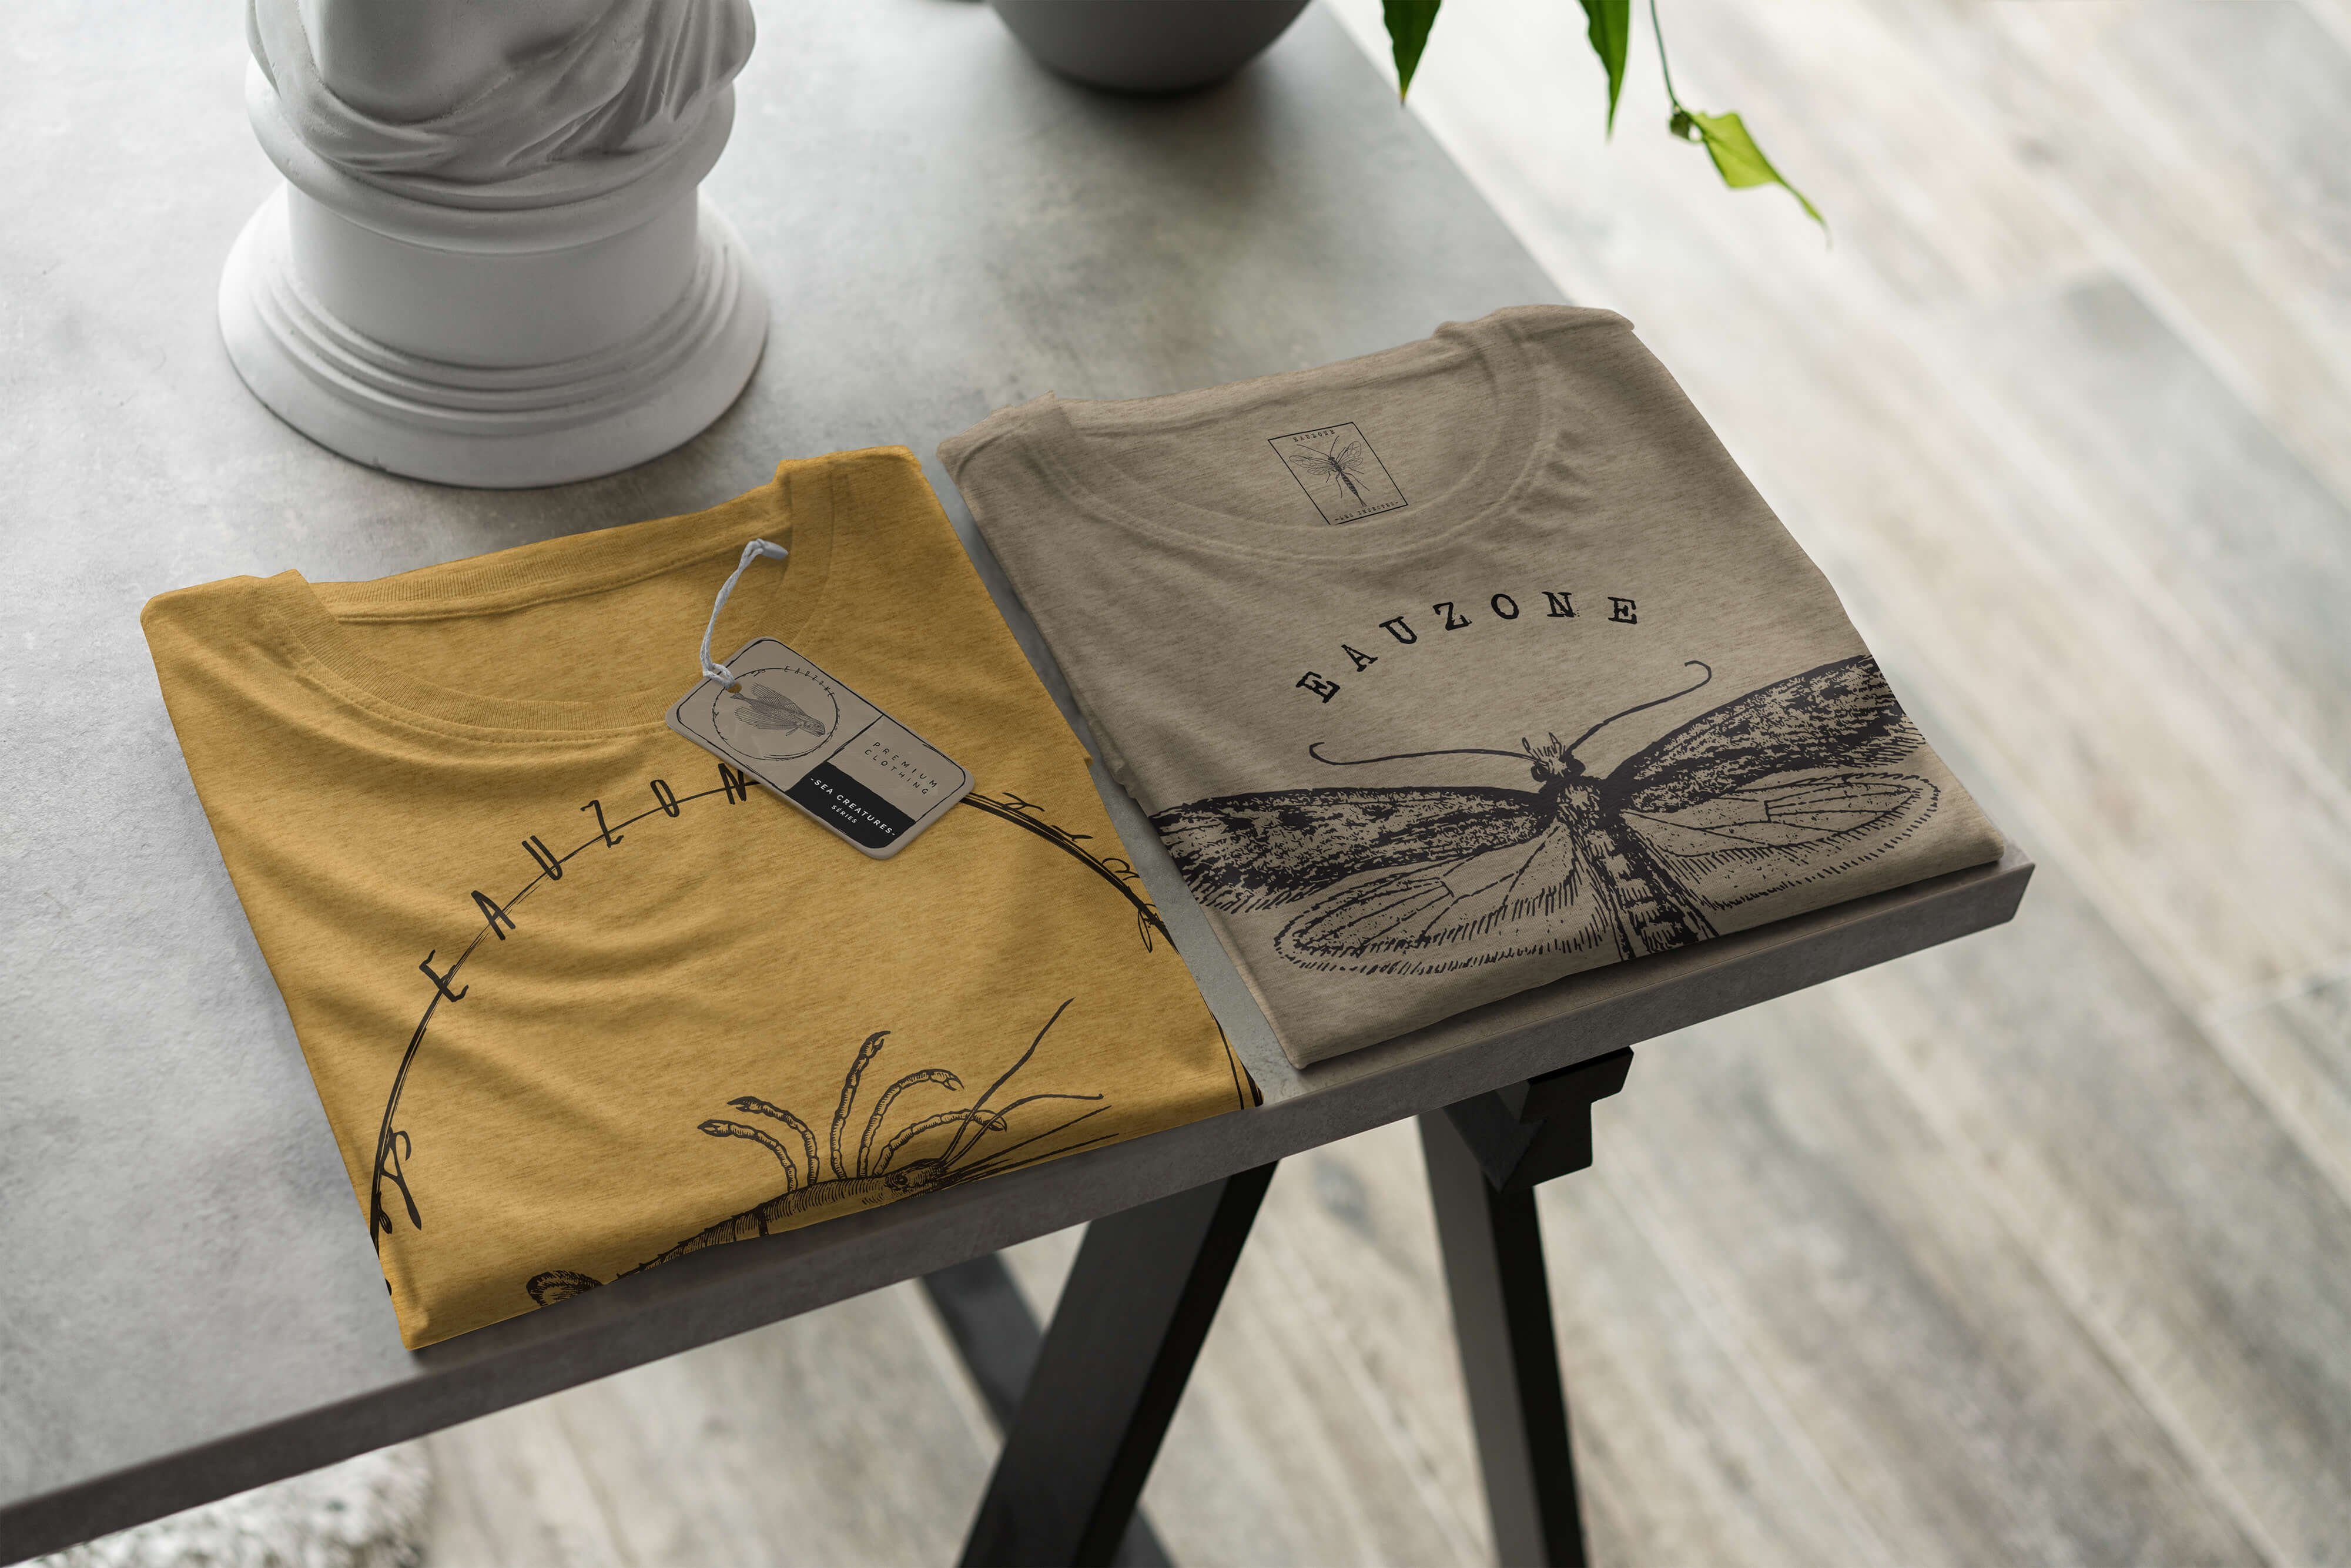 feine Sea - Fische Antique sportlicher Struktur / Serie: T-Shirt Art Tiefsee und Gold Creatures, Schnitt T-Shirt Sea 009 Sinus